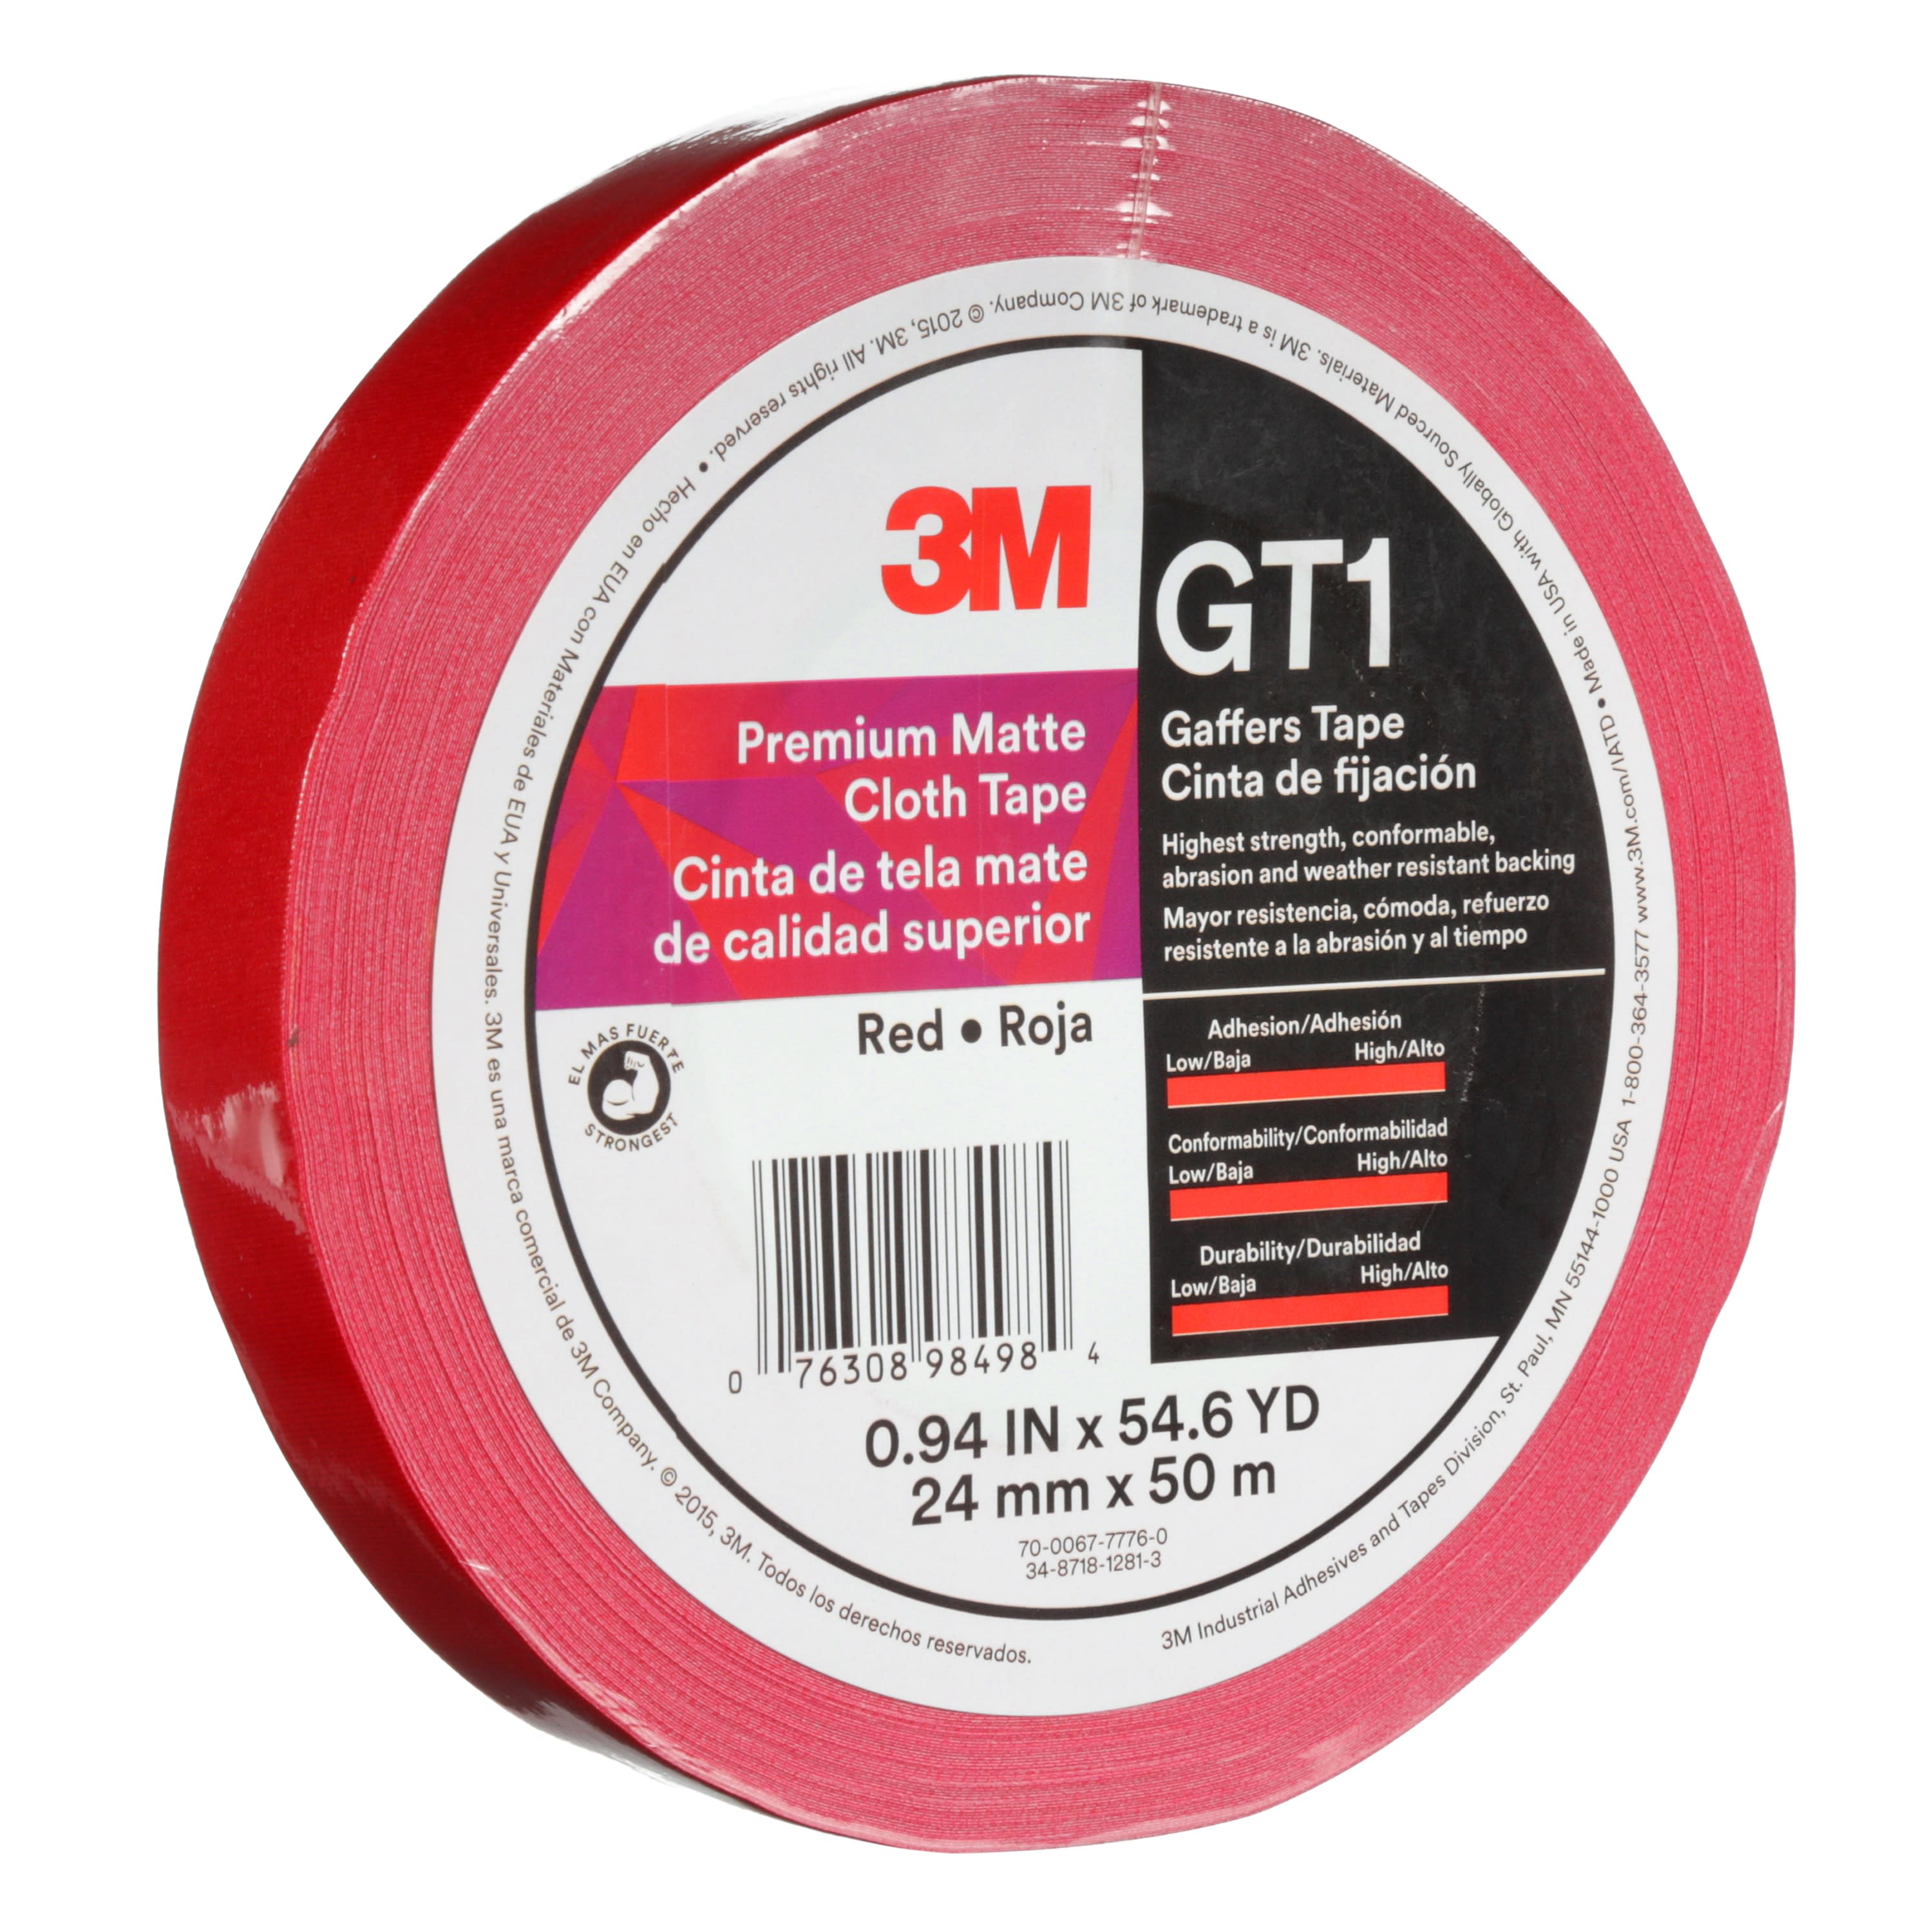 3M™ Premium Matte Cloth (Gaffers) Tape GT1, Red, 24 mm x 50 m, 11 mil,
48 per case